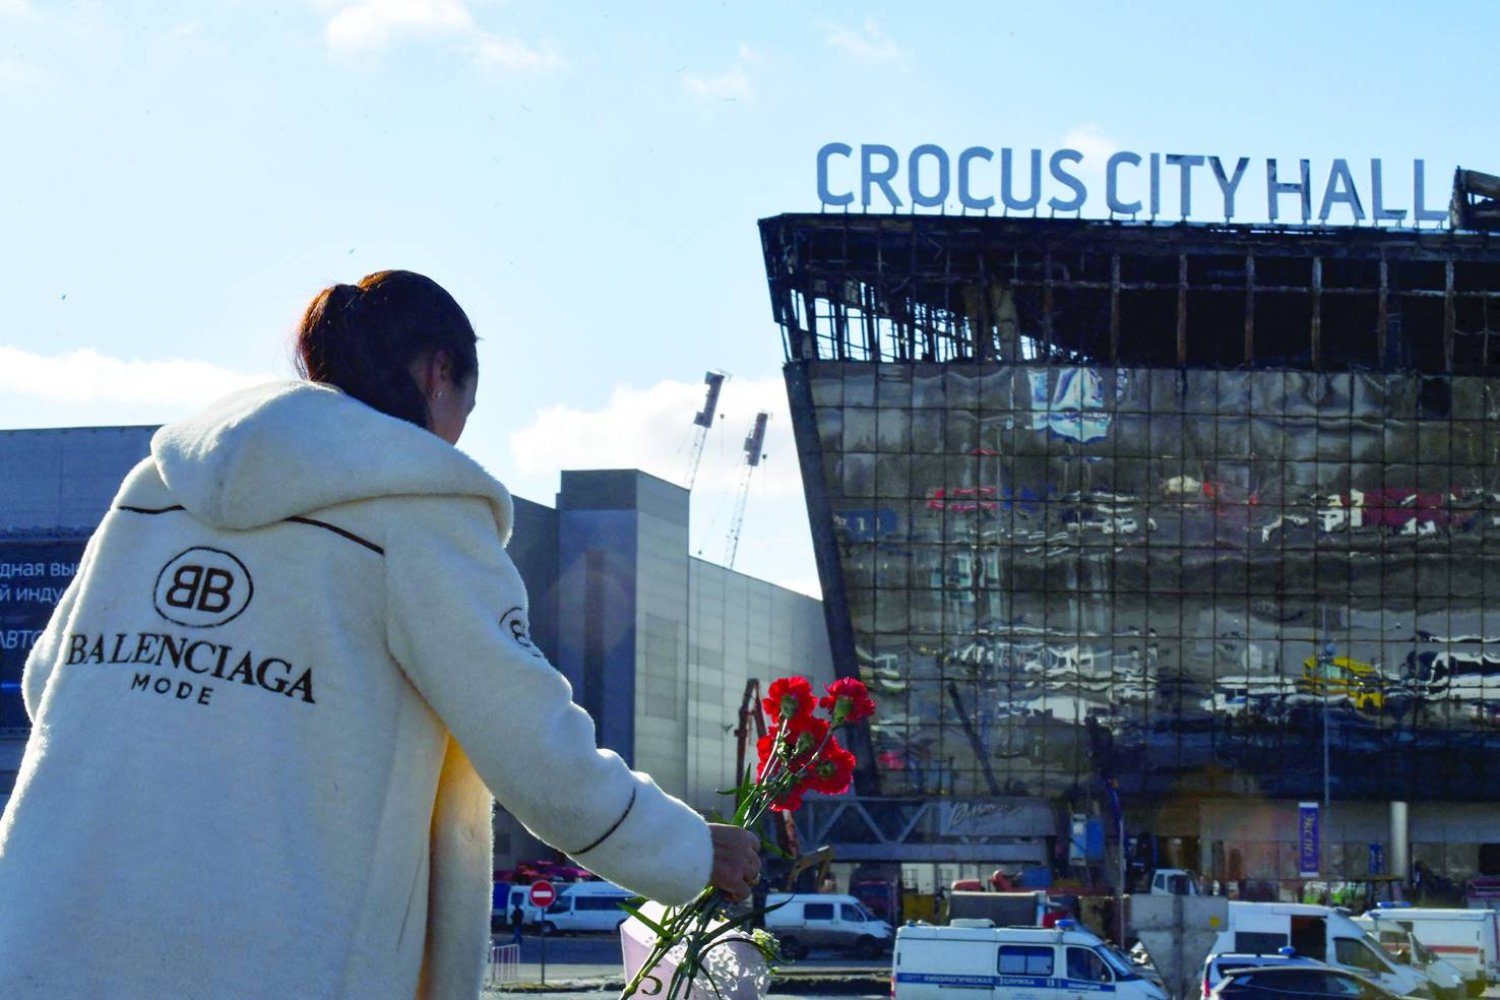 
تفحُّم صالة «كروكوس سيتي هول» للحفلات في موسكو بسبب هجوم إرهابي (أ.ف.ب)